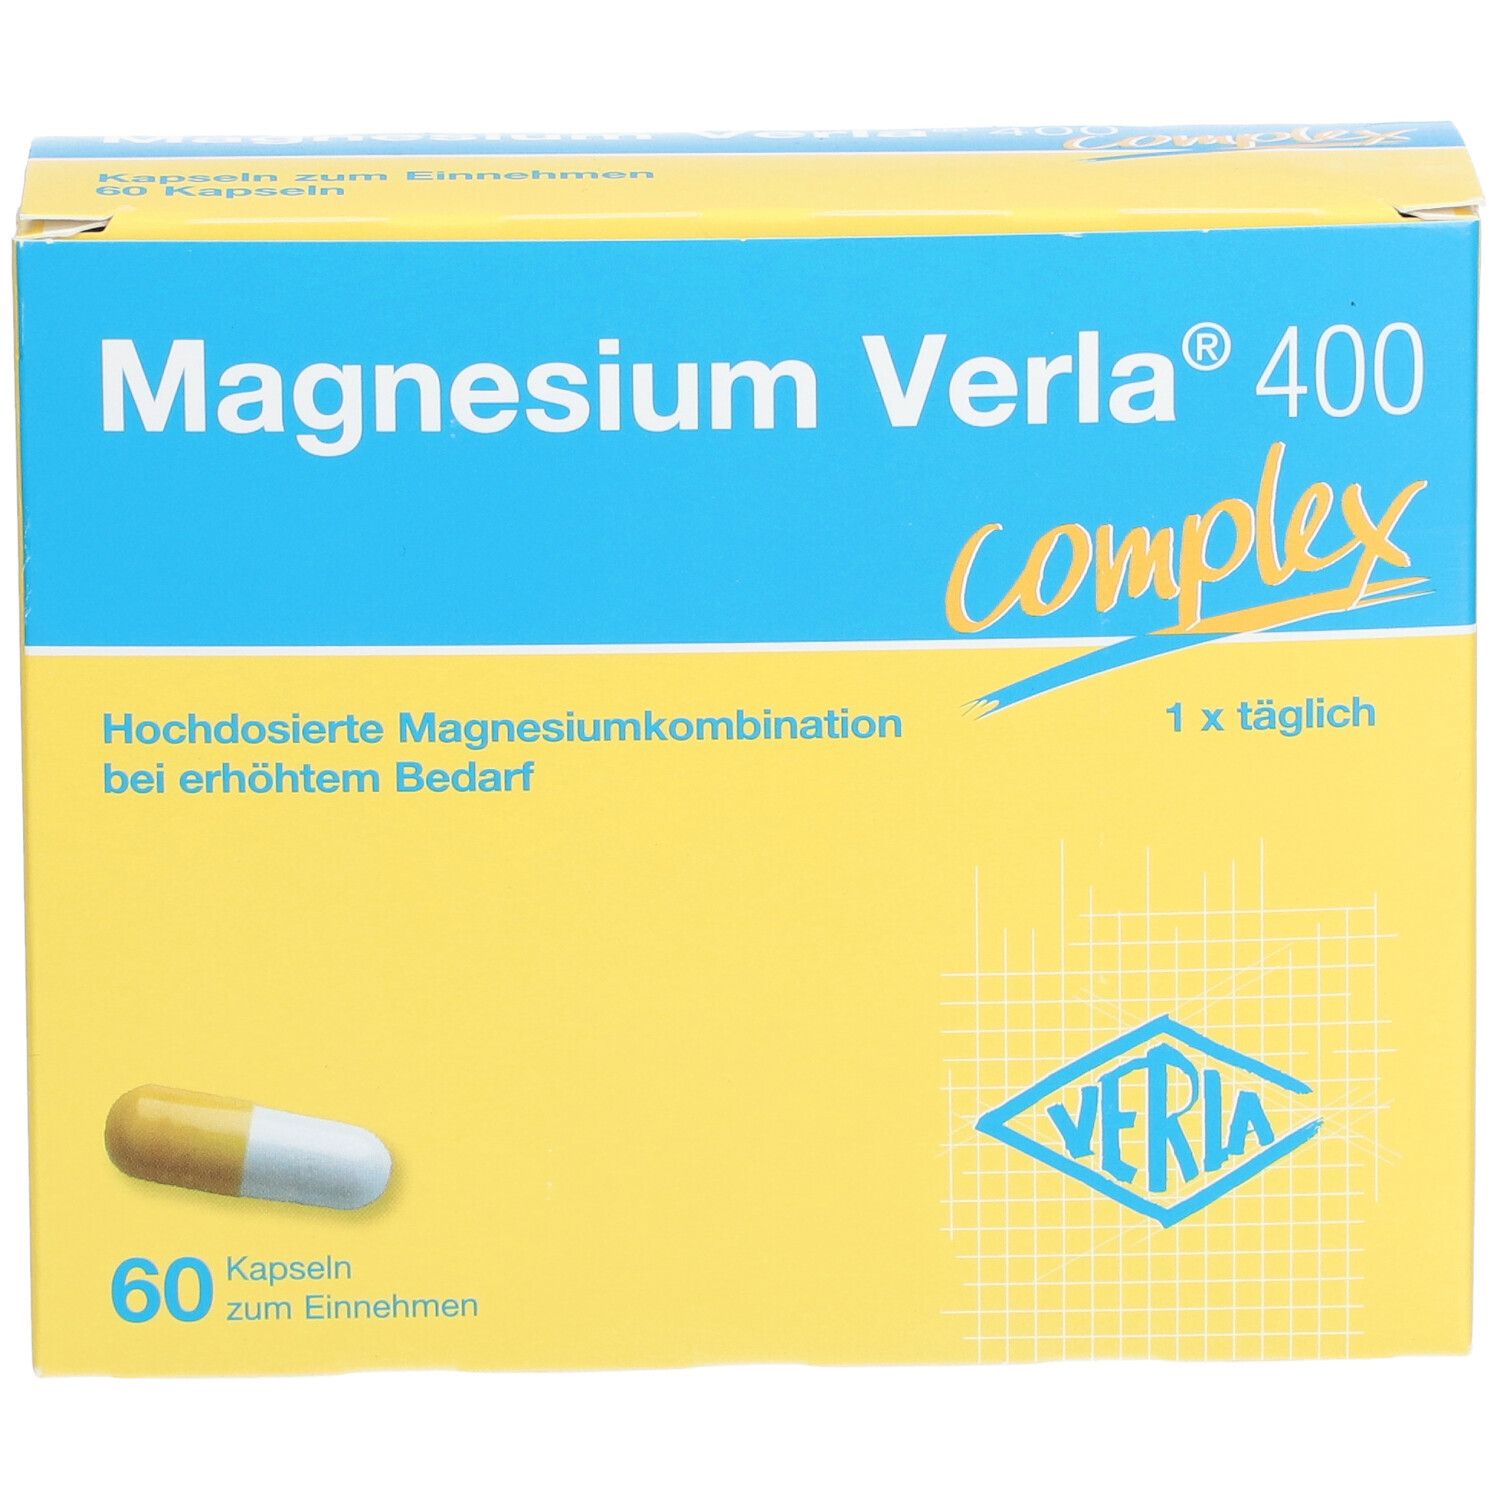 Magnesium Verla® 400